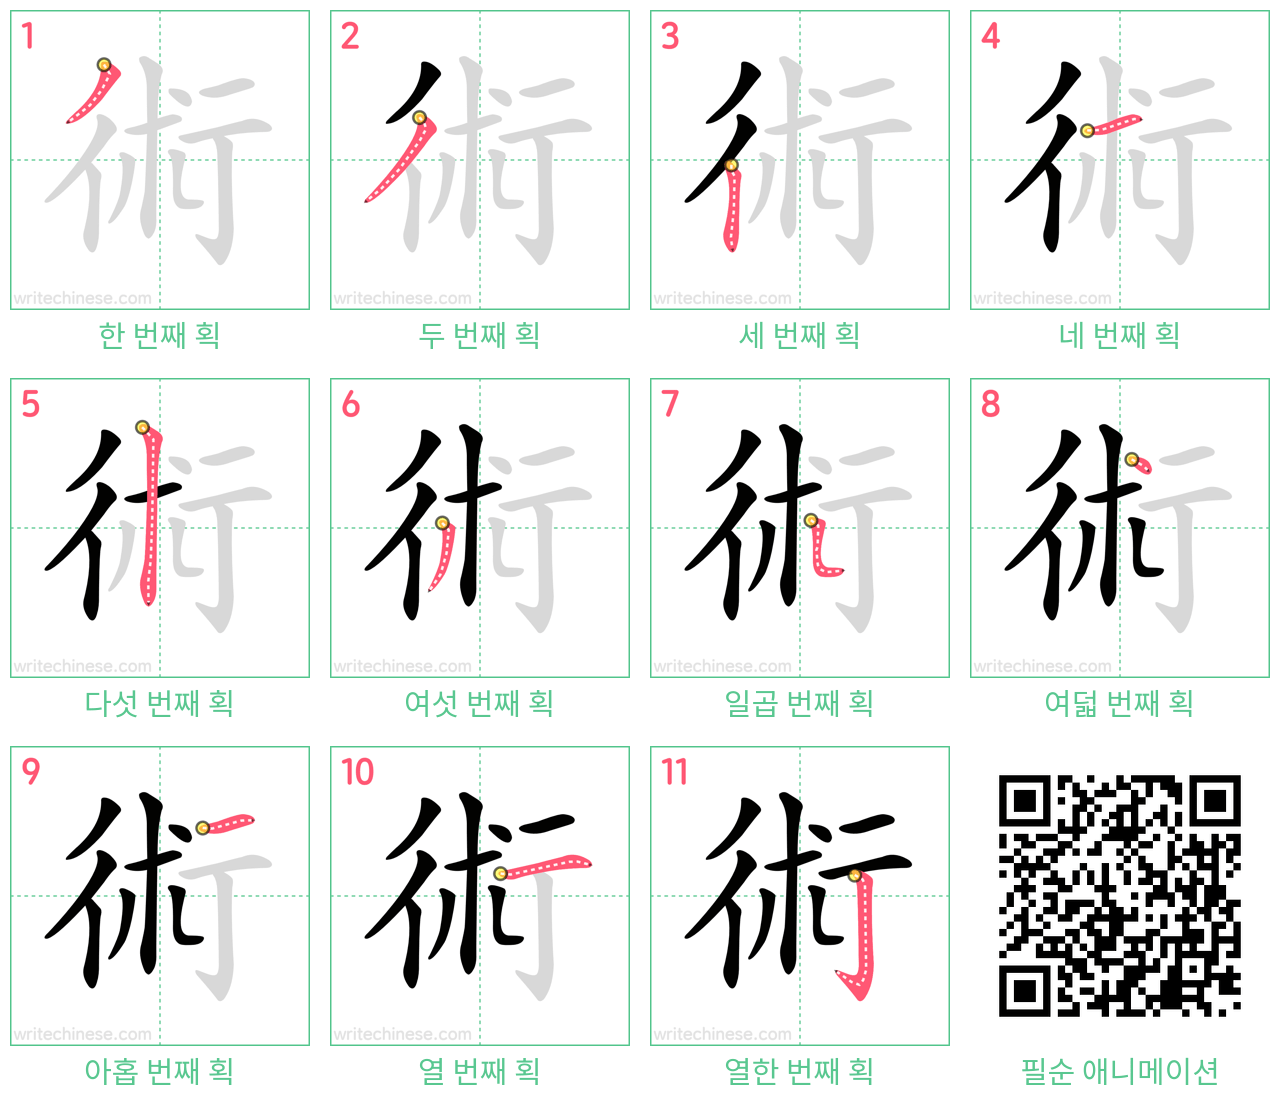 術 step-by-step stroke order diagrams